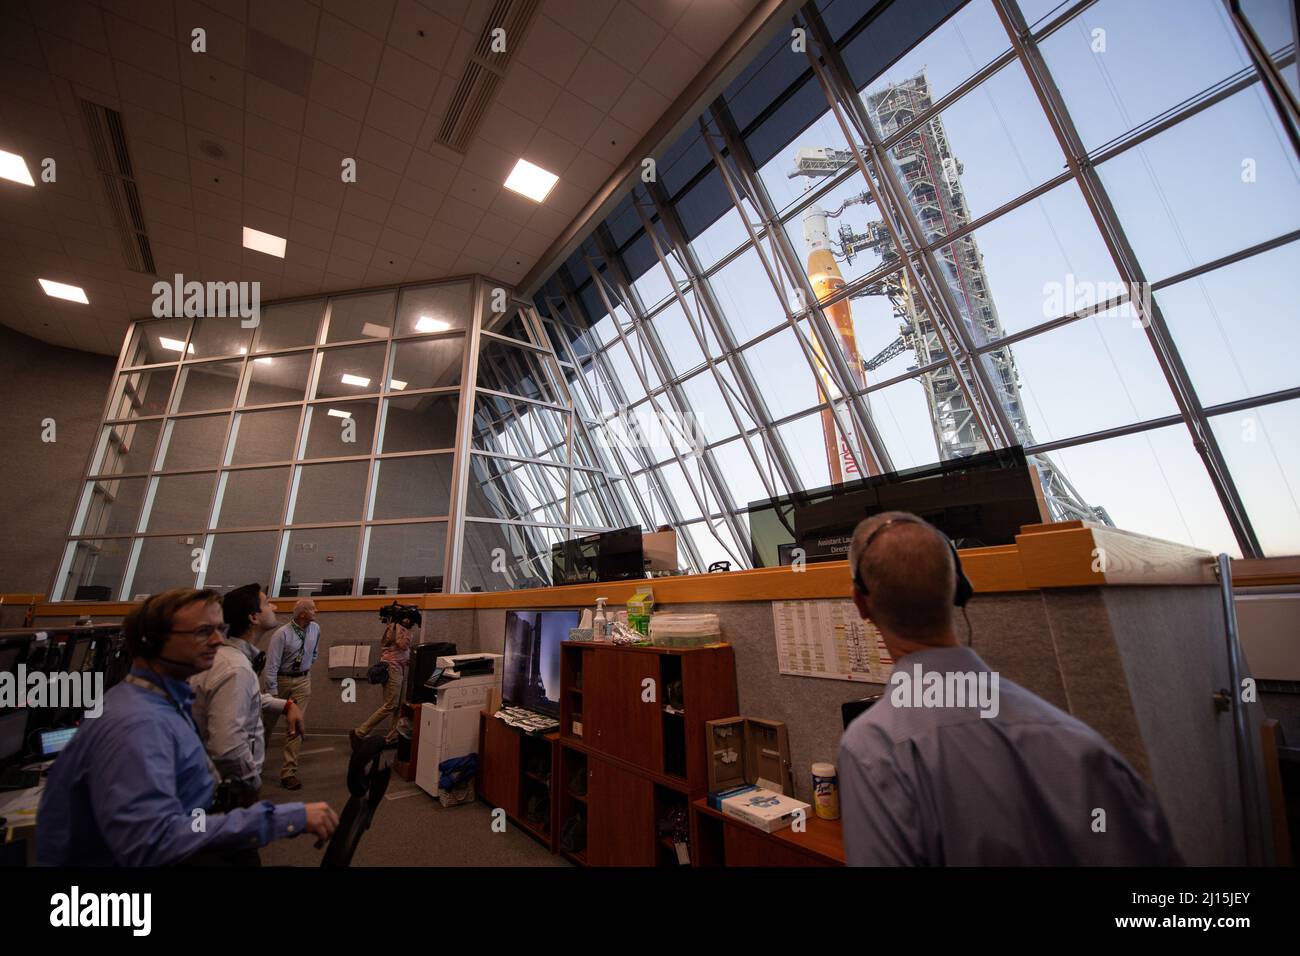 Les membres de l’équipe Artemis I lancent un engin de tir observer les fenêtres de la salle de tir un du centre de contrôle de lancement Rocco A. Petrone comme fusée SLS (Space Launch System) de la NASA avec l’engin spatial Orion à bord d’un lanceur mobile sort de High Bay 3 du bâtiment d’assemblage de véhicules Pour la première fois au lancement du complexe 39B, le jeudi 17 mars 2022, au Kennedy Space Center de la NASA, en Floride. Avant l'essai en vol Artemis I de la NASA, la fusée SLS et le vaisseau spatial Orion entièrement empilés et intégrés feront l'objet d'une répétition en robe humide au Launch Complex 39B pour vérifier les systèmes et pratiquer la procédure de compte à rebours Banque D'Images